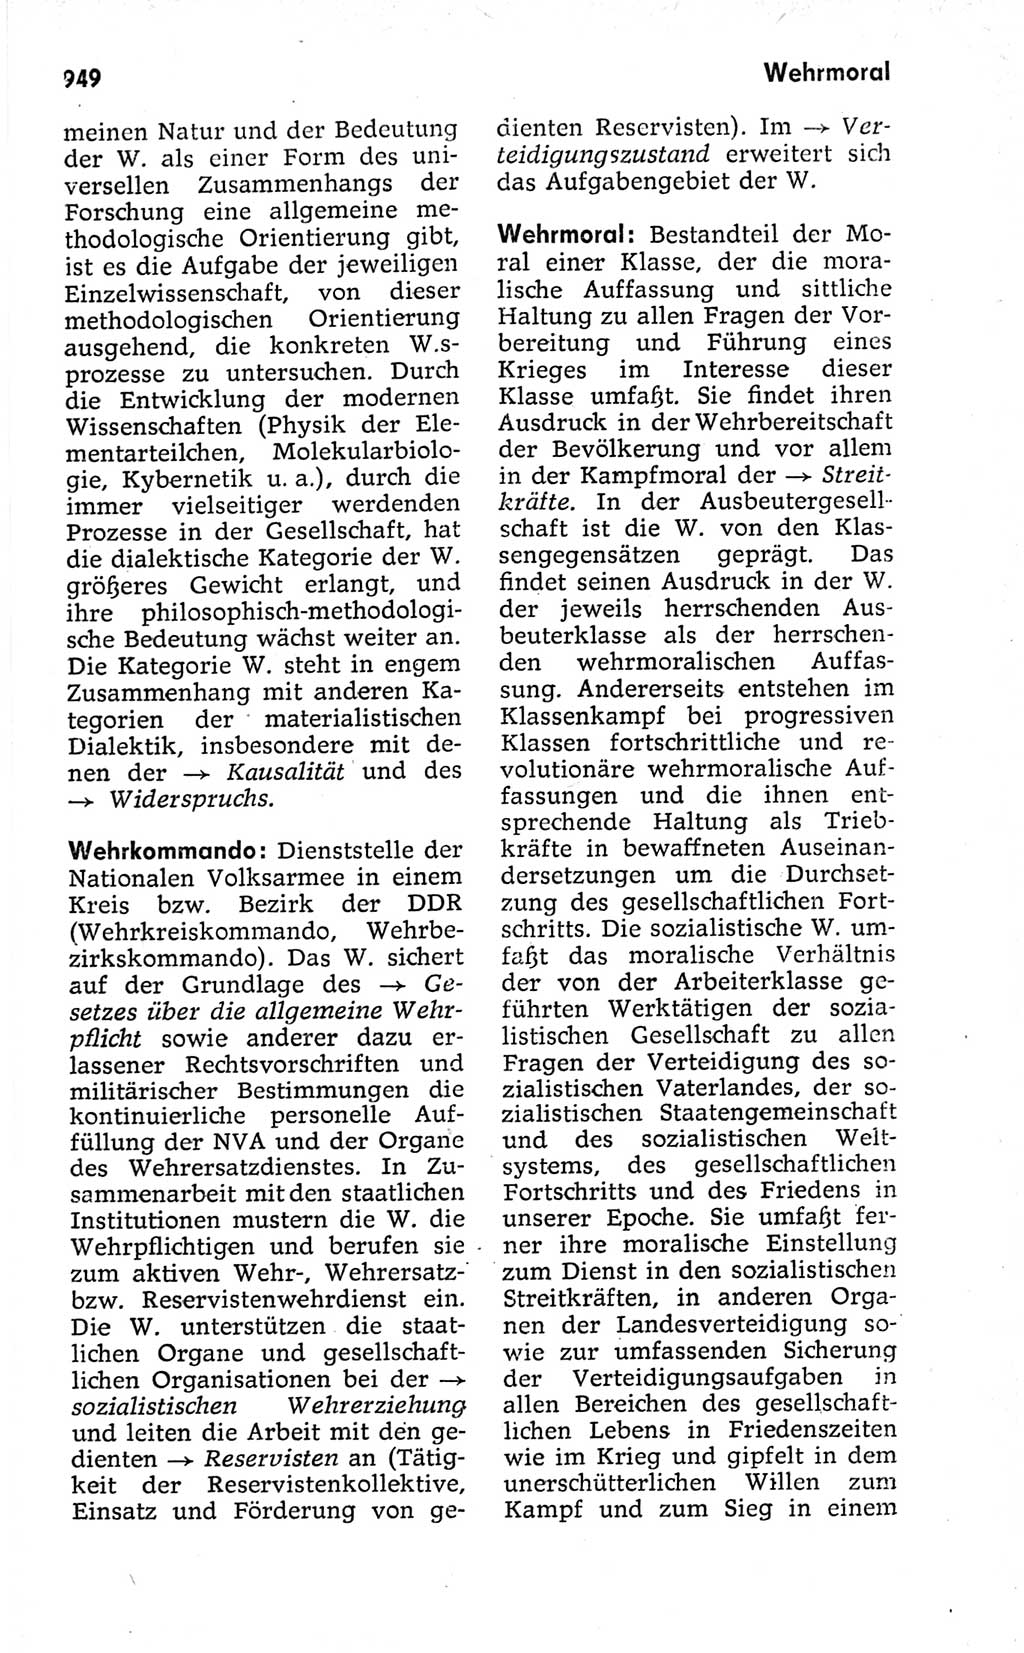 Kleines politisches Wörterbuch [Deutsche Demokratische Republik (DDR)] 1973, Seite 949 (Kl. pol. Wb. DDR 1973, S. 949)